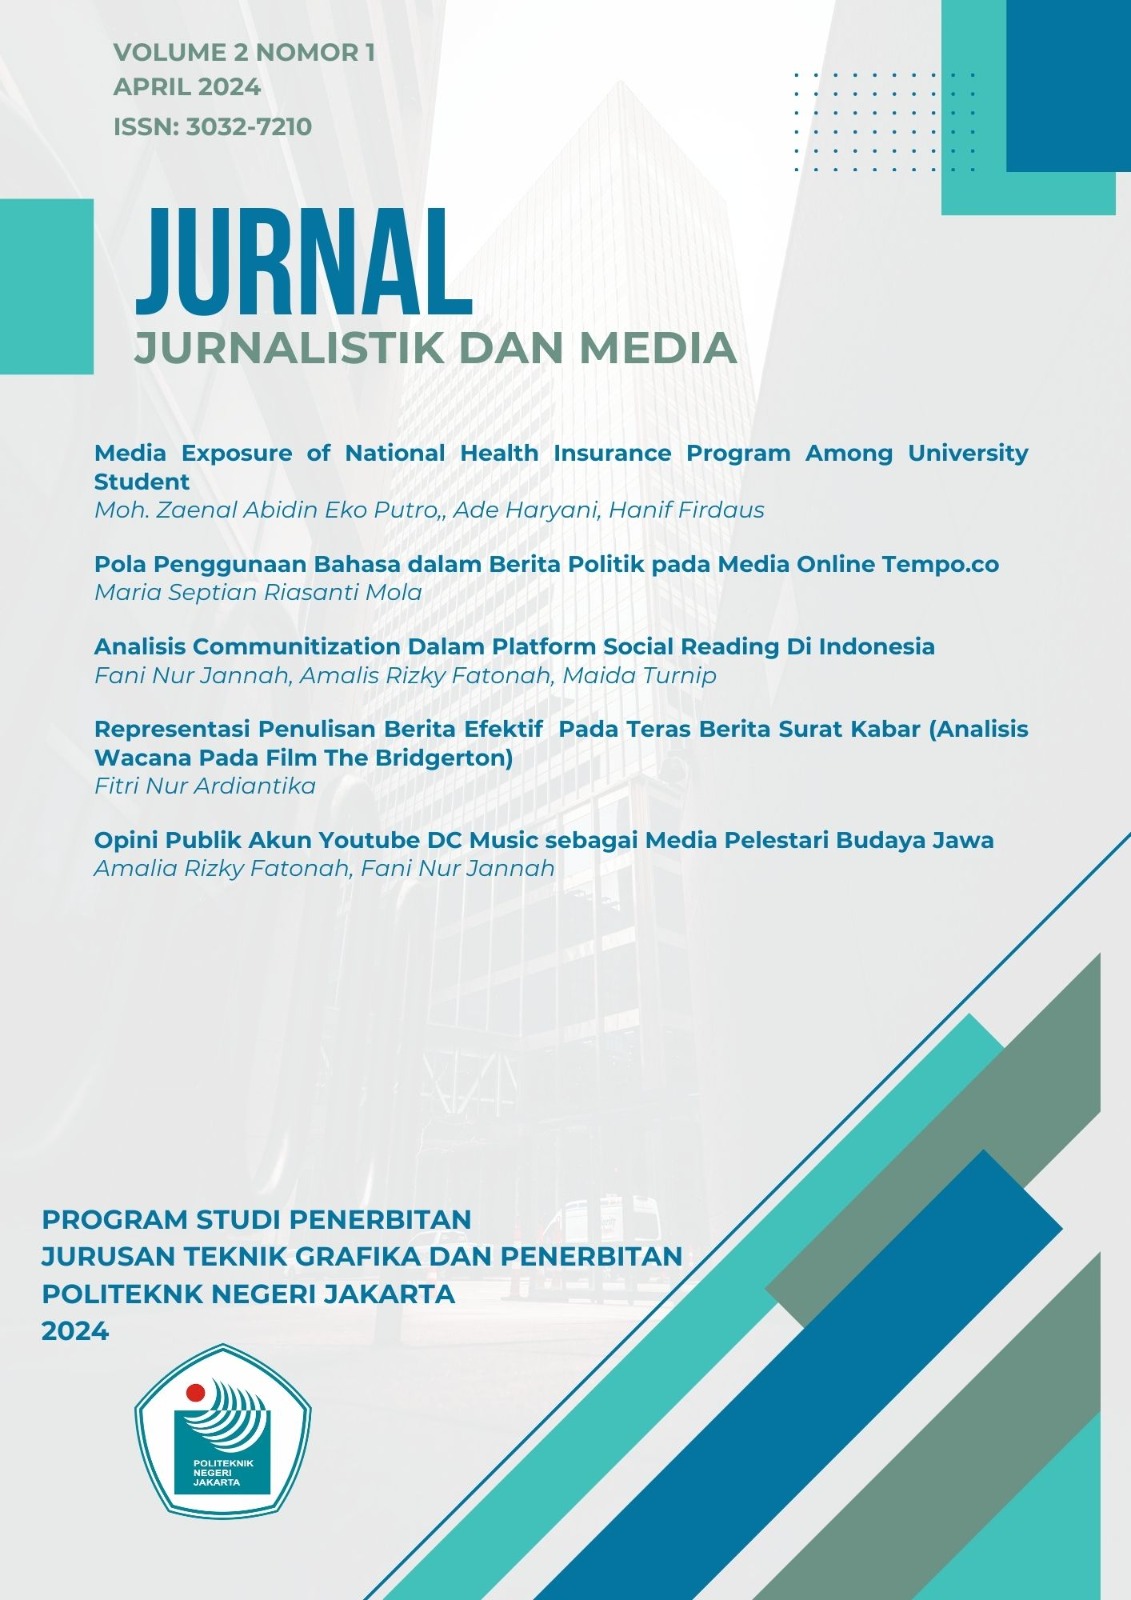 					Lihat Vol 2 No 1 (1): Jurnal Jurnalistik dan Media
				